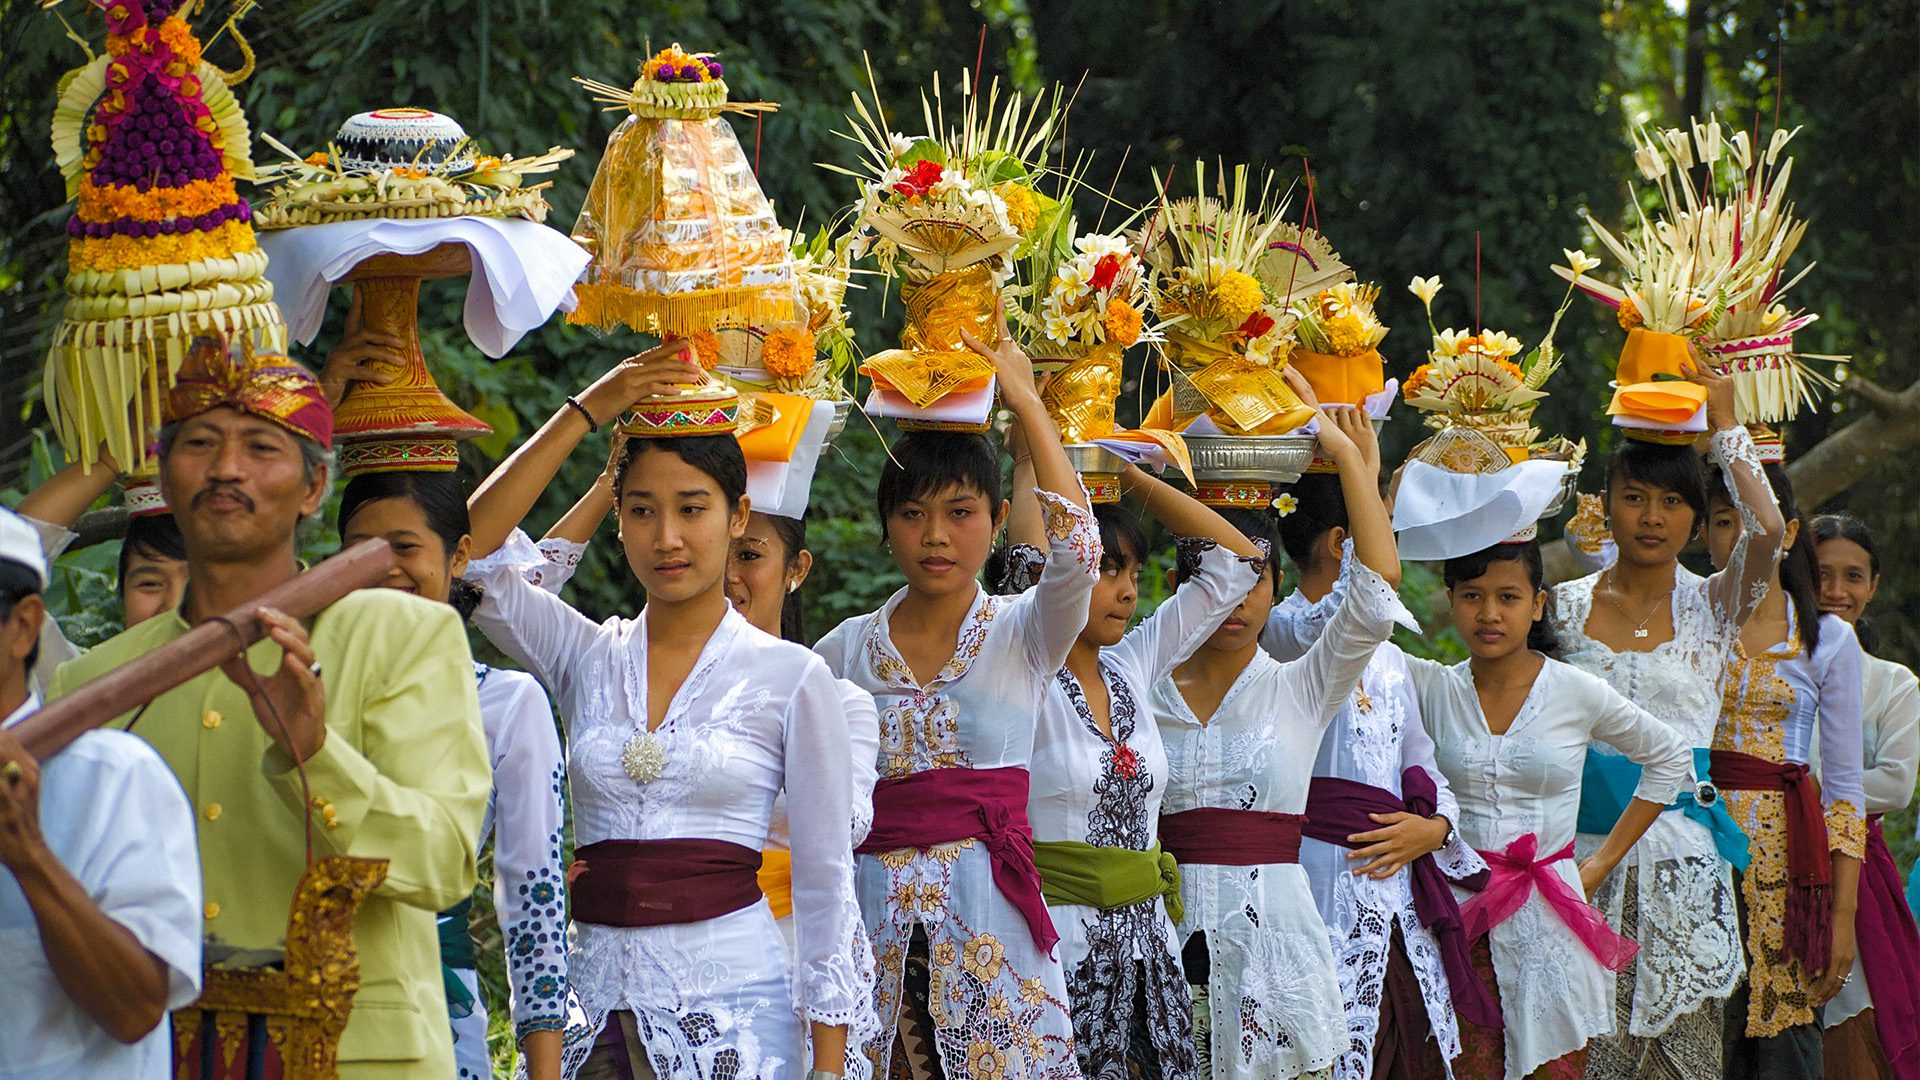 جشنواره گالونگان بالی